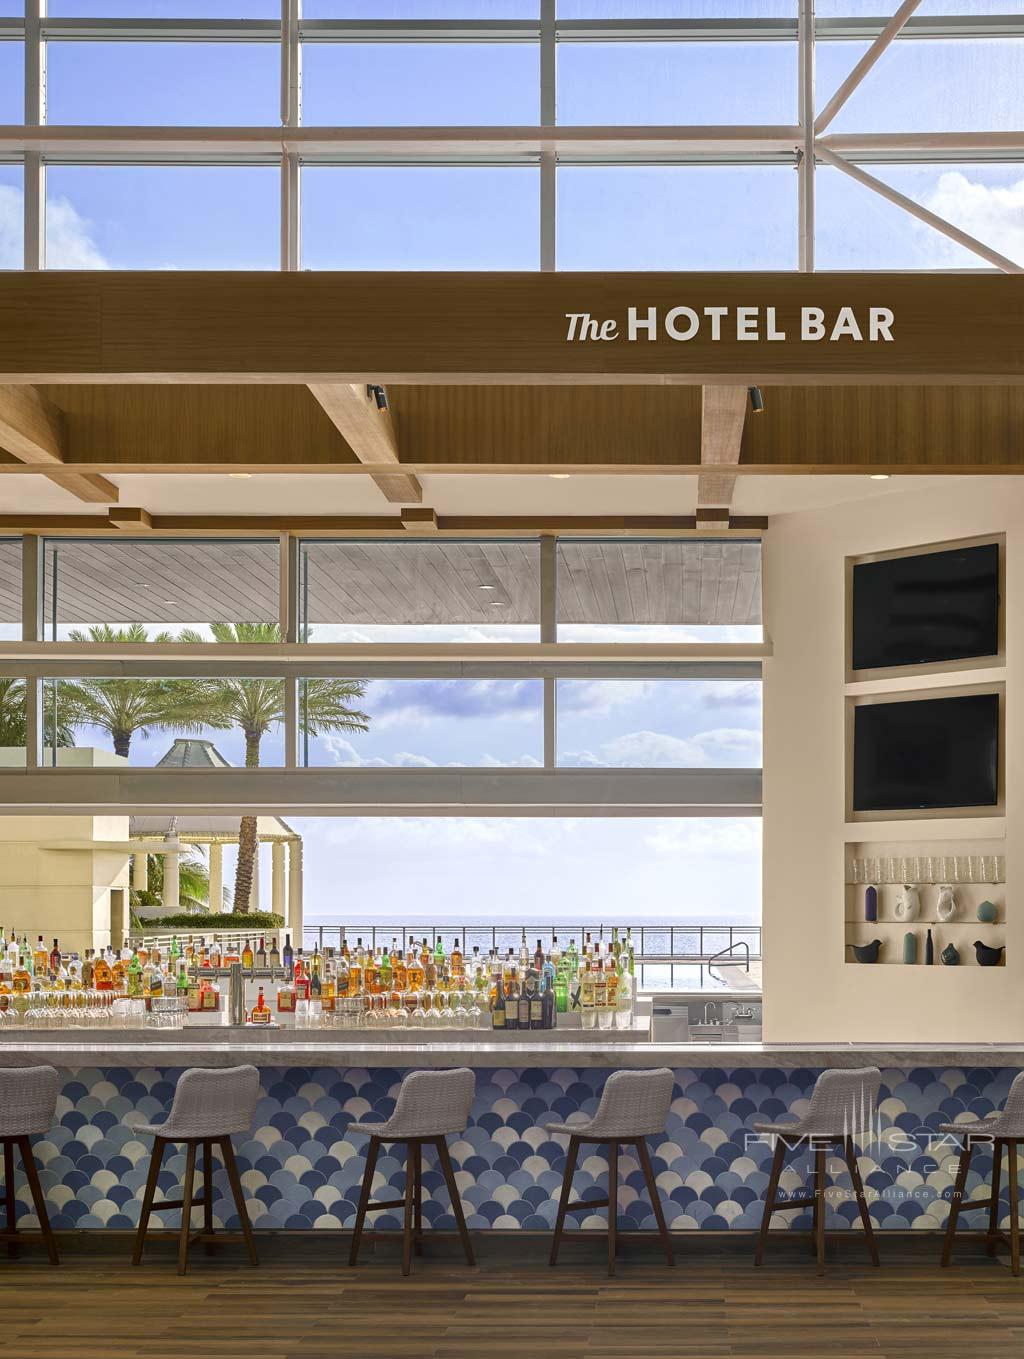 Hotel Lobby and Bar at The Diplomat Resort and Spa. Hollywood Beach, FL